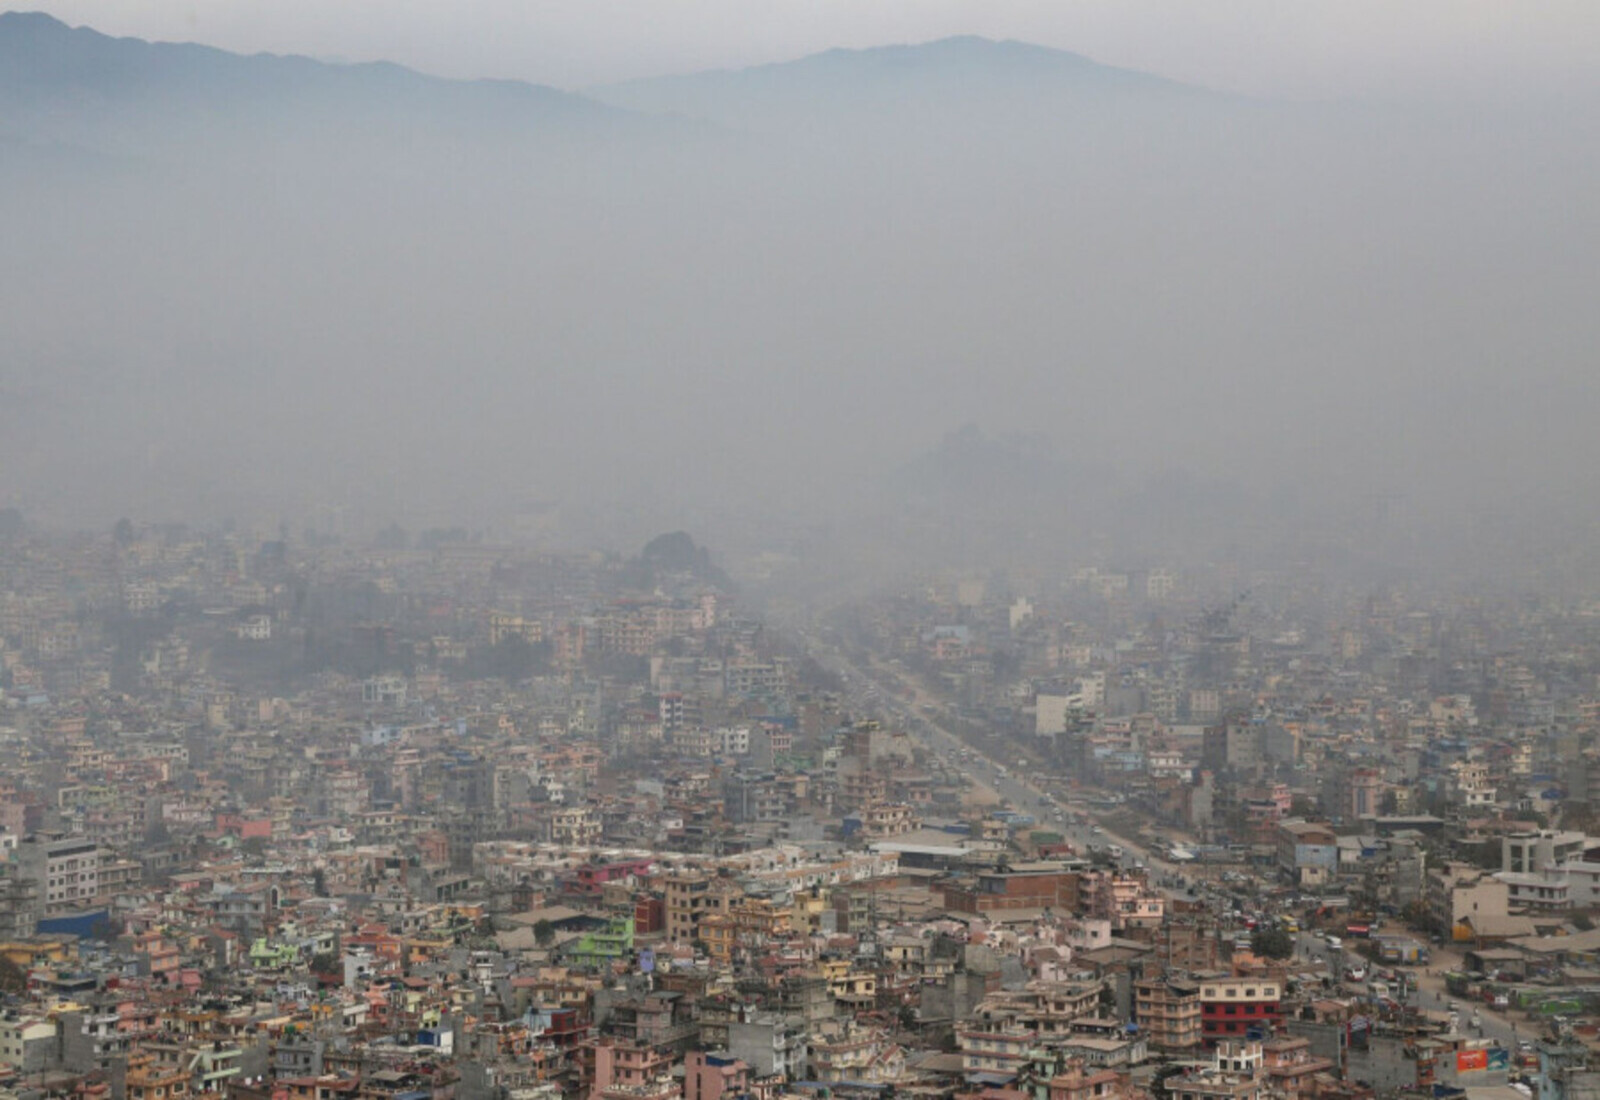 काठमाडौँ विश्वकै प्रदूषित शहरको सूचीमा दोस्रो स्थानमा